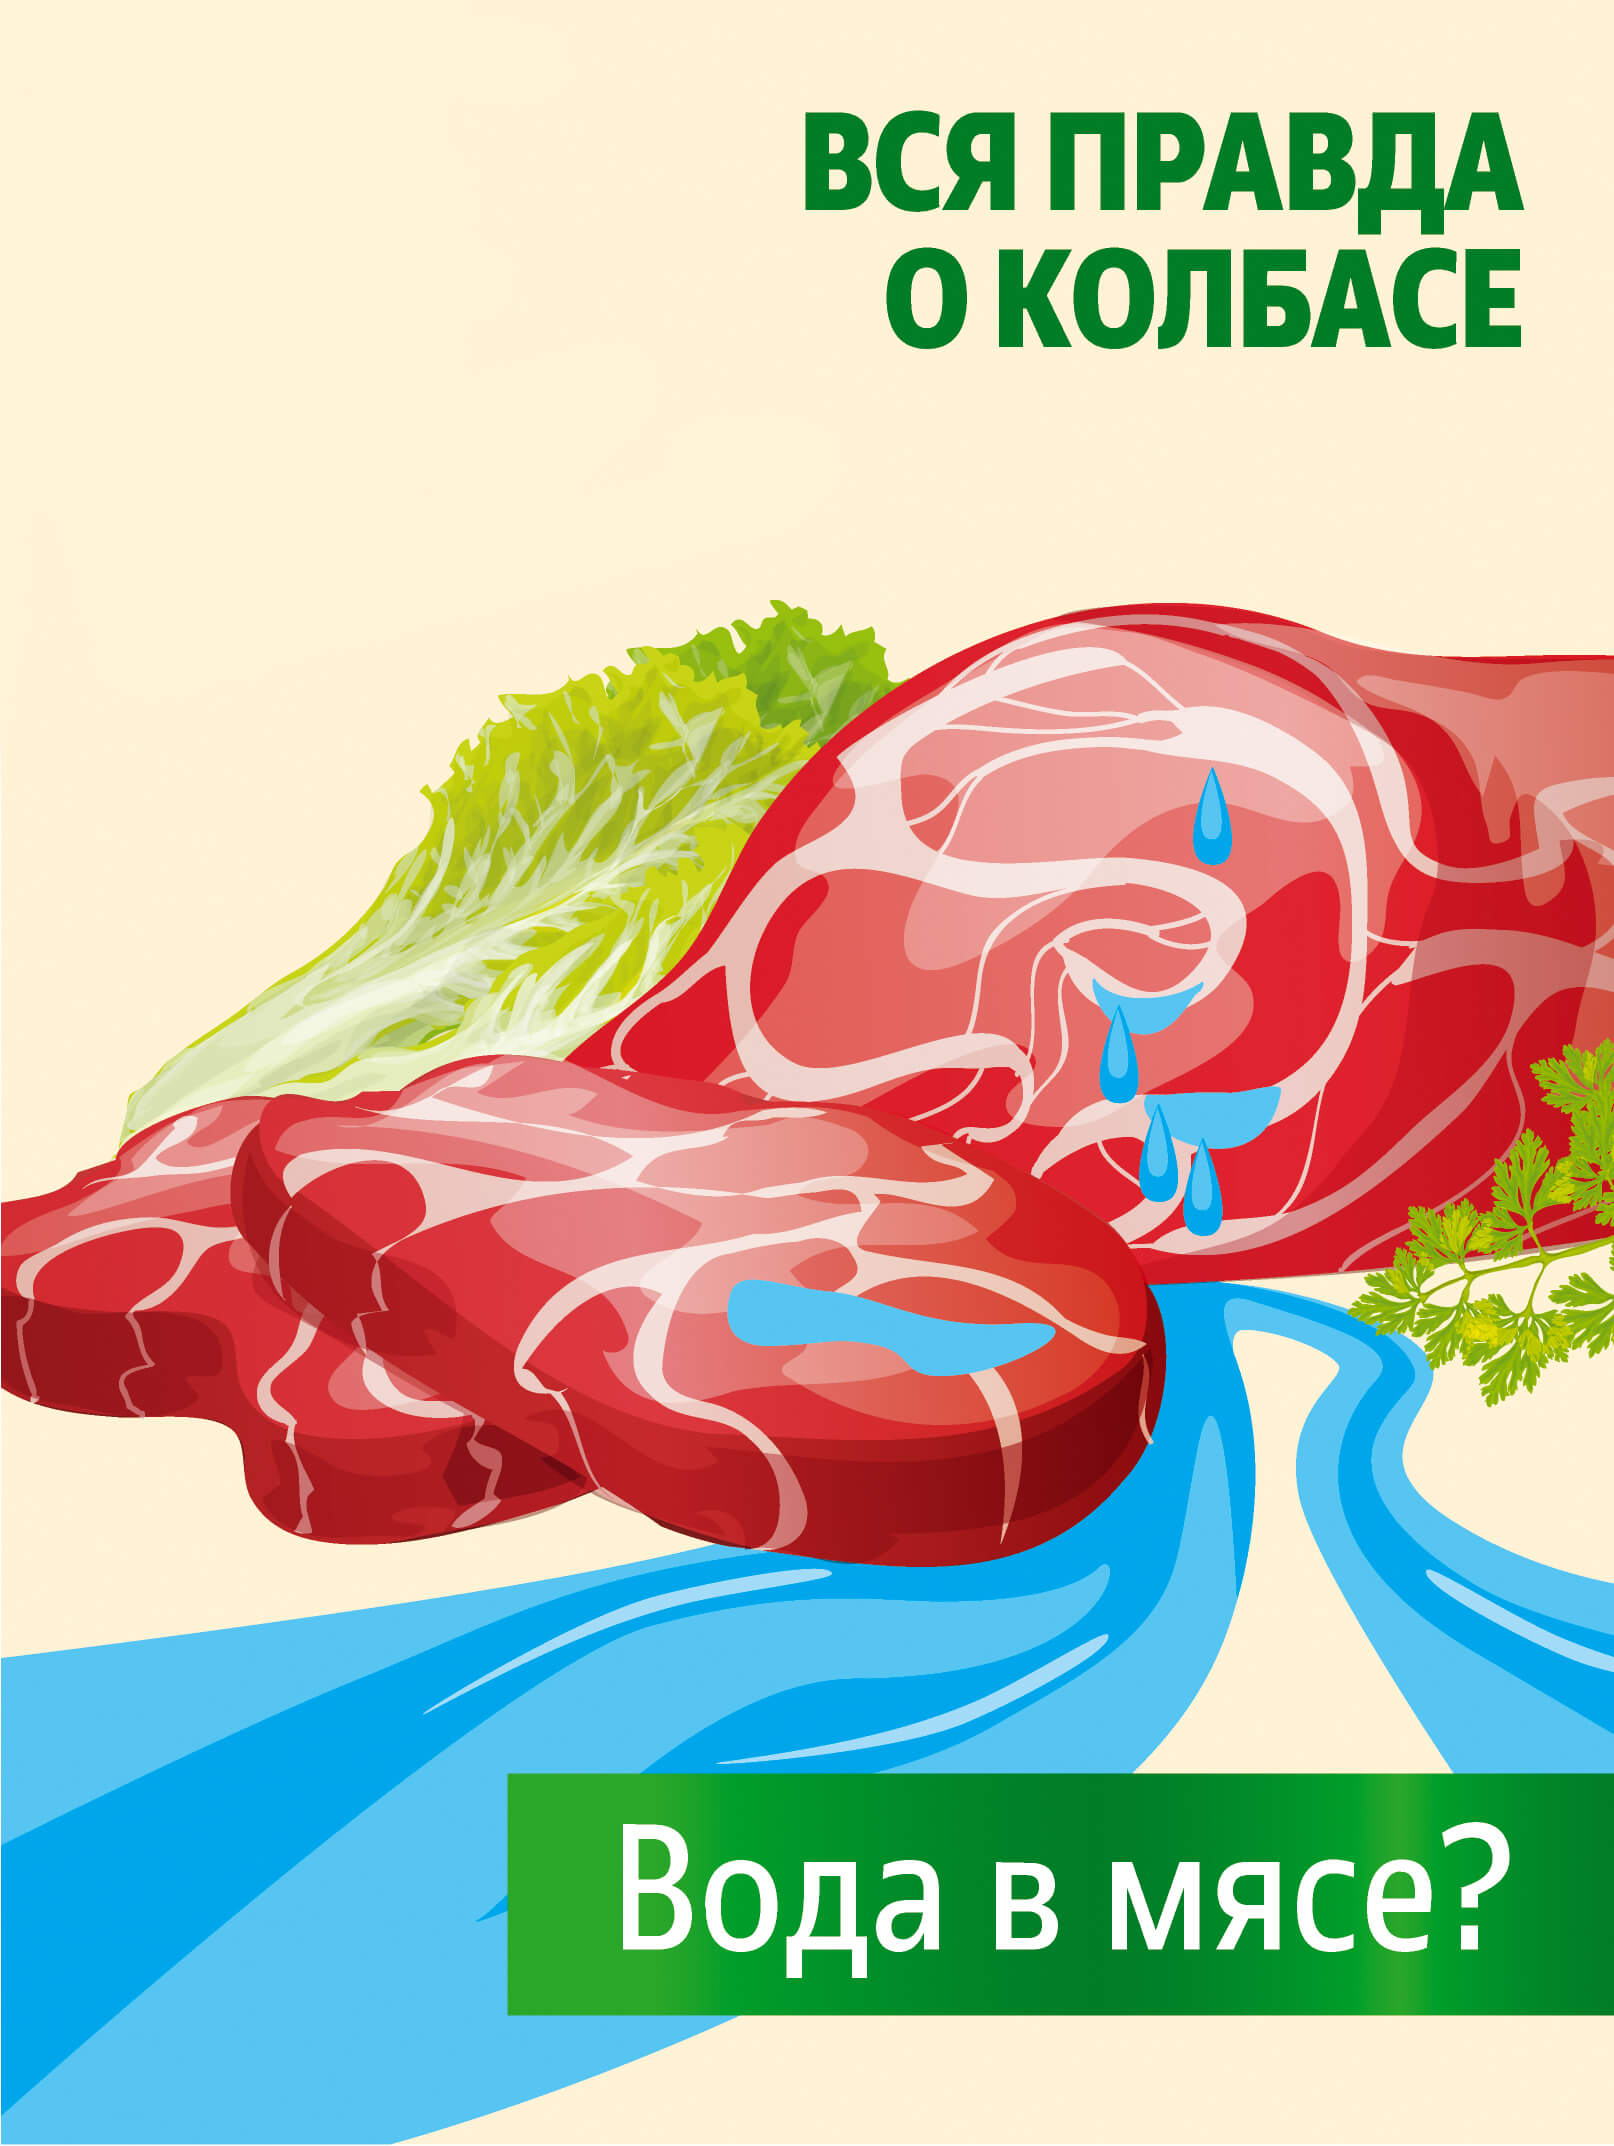 Правда о колбасе: МИФ 4. Для увеличения веса мясо шприцуют